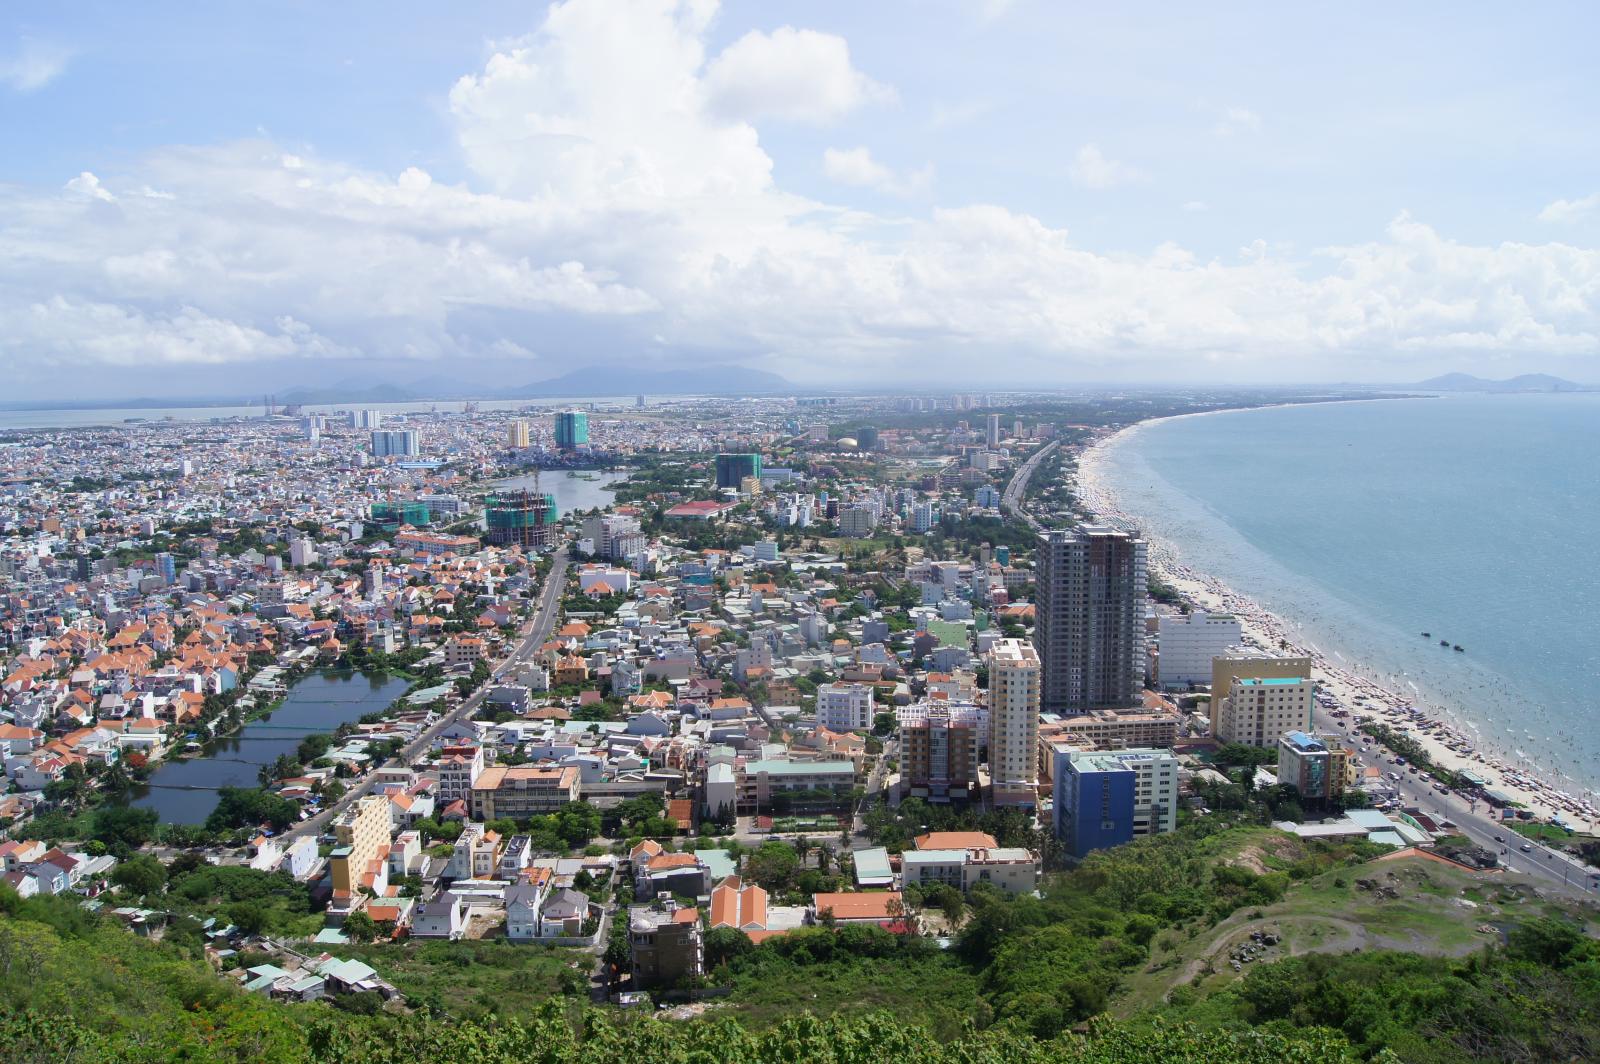 hình ảnh thành phố ven biển nhìn từ trên cao